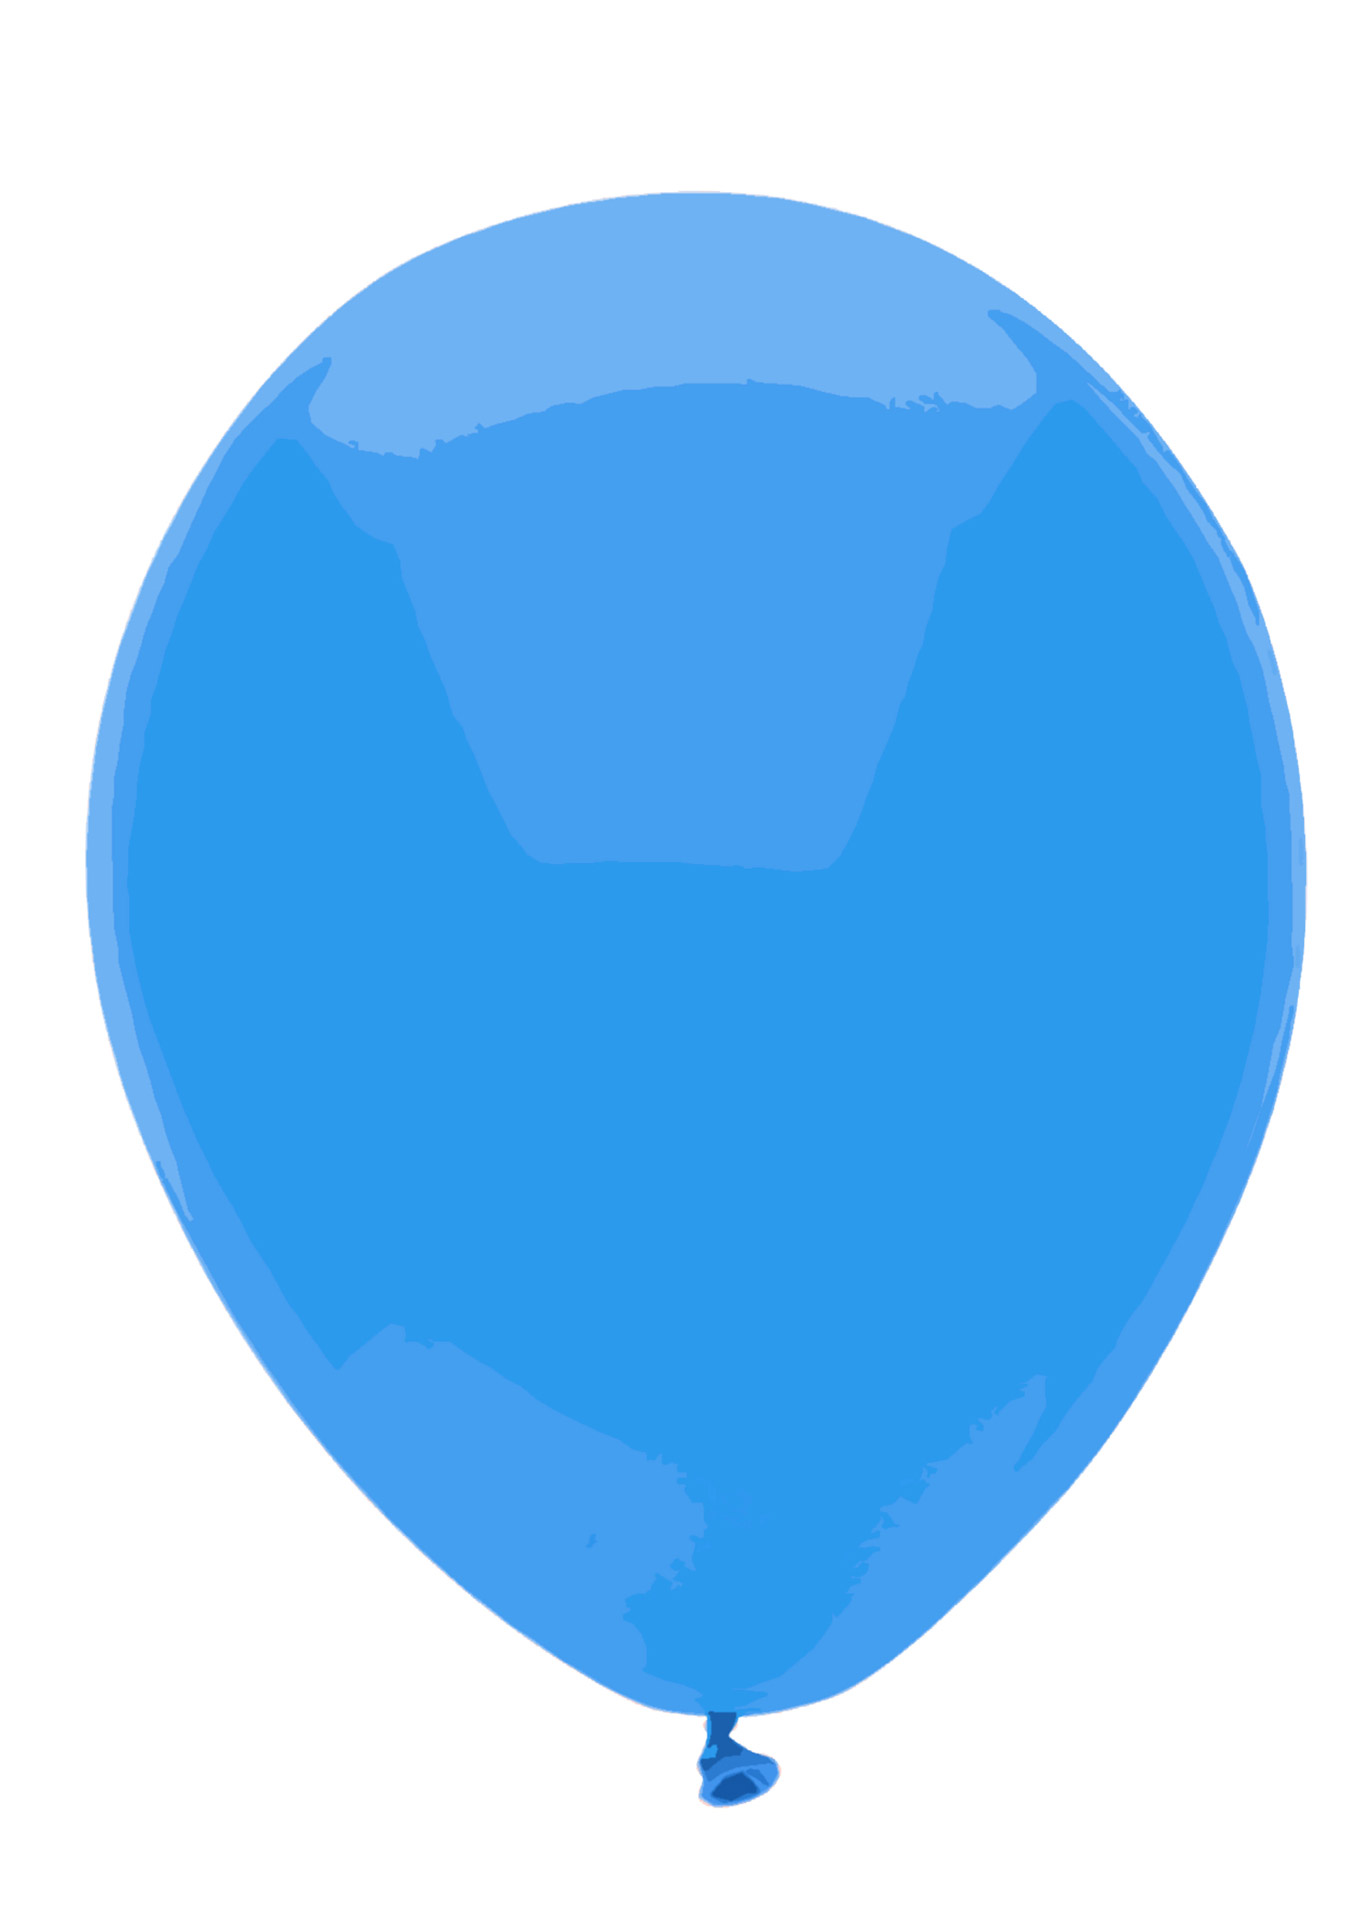 Голубому воздушному шару. Синий воздушный шар. Голубой шарик. Нарик воздушний голубой. Голубой воздушный шарик.